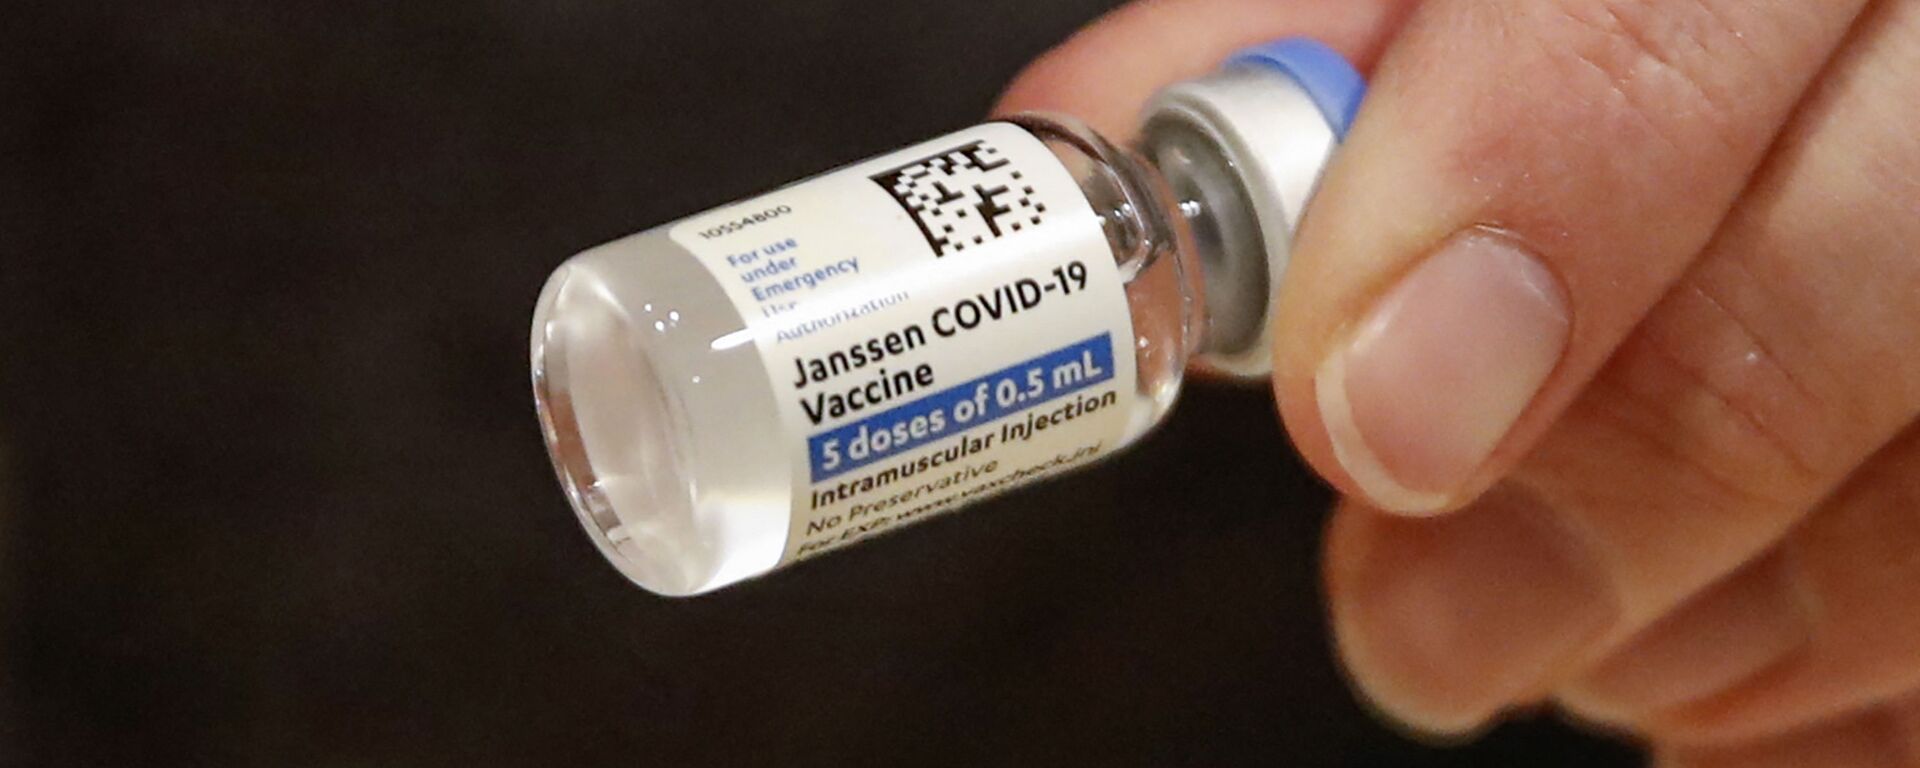 Le vaccin Janssen Covid-19 produit par Johnson & Johnson - Sputnik Afrique, 1920, 13.04.2021